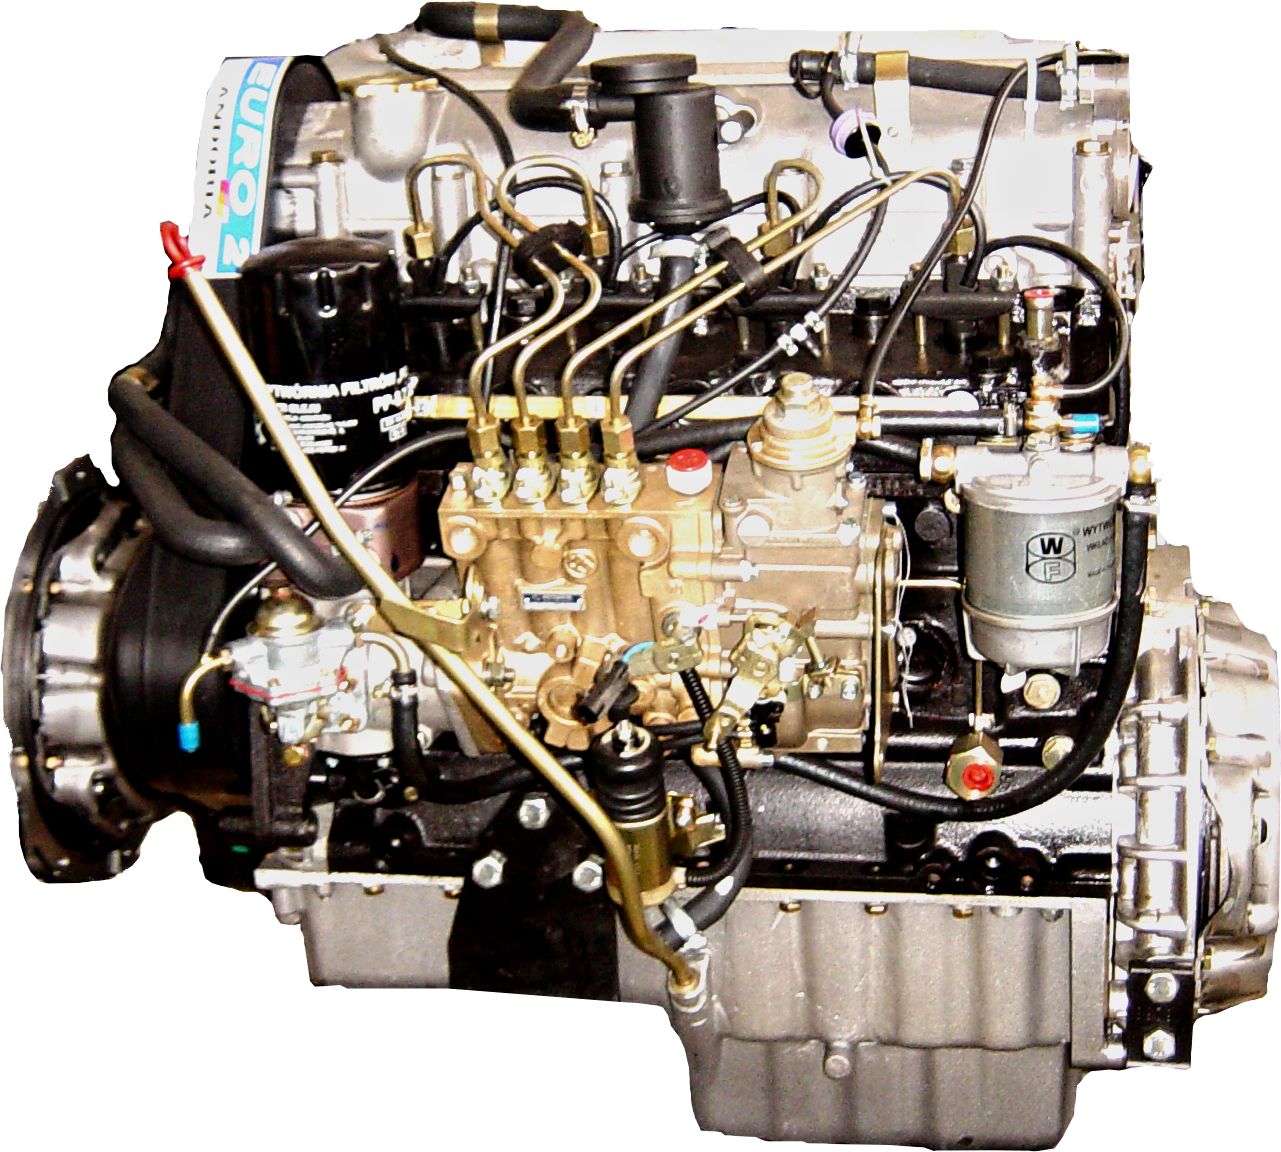 محرك E46 من BMW - ما هي المحركات التي يجب علي الانتباه إليها؟